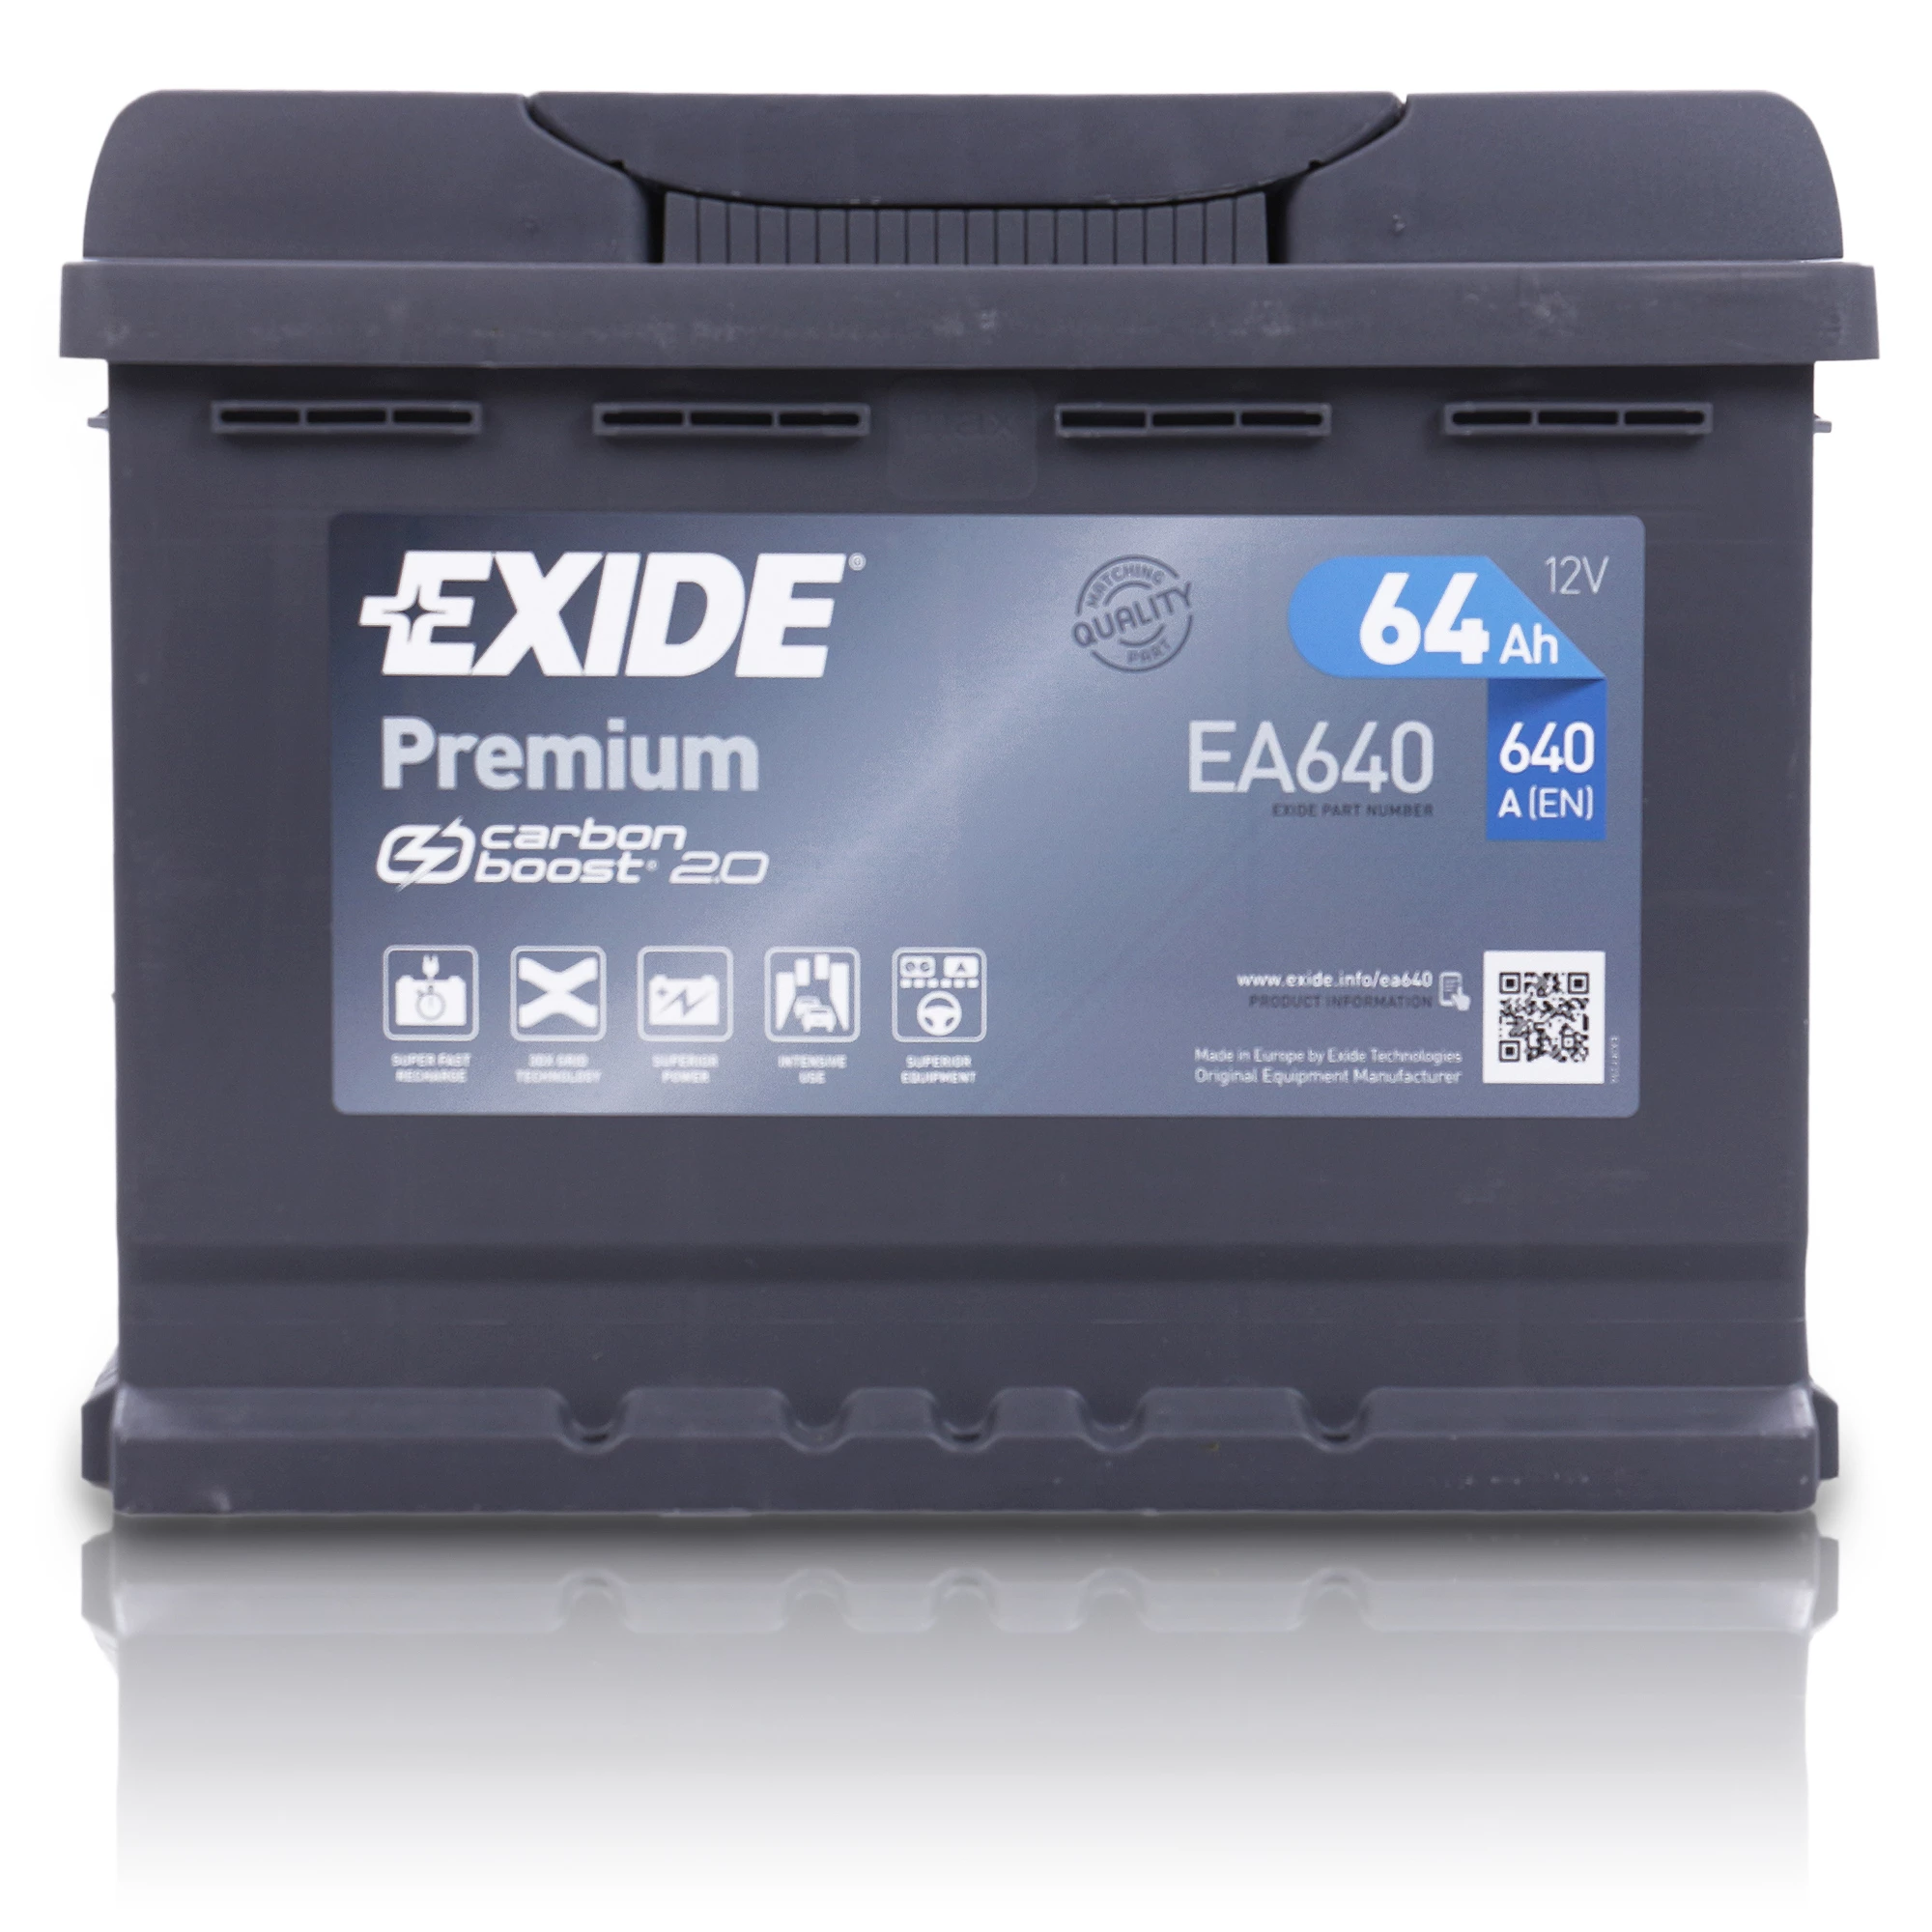 Exide Premium Carbon Boost EA640 64Ah Autobatterie